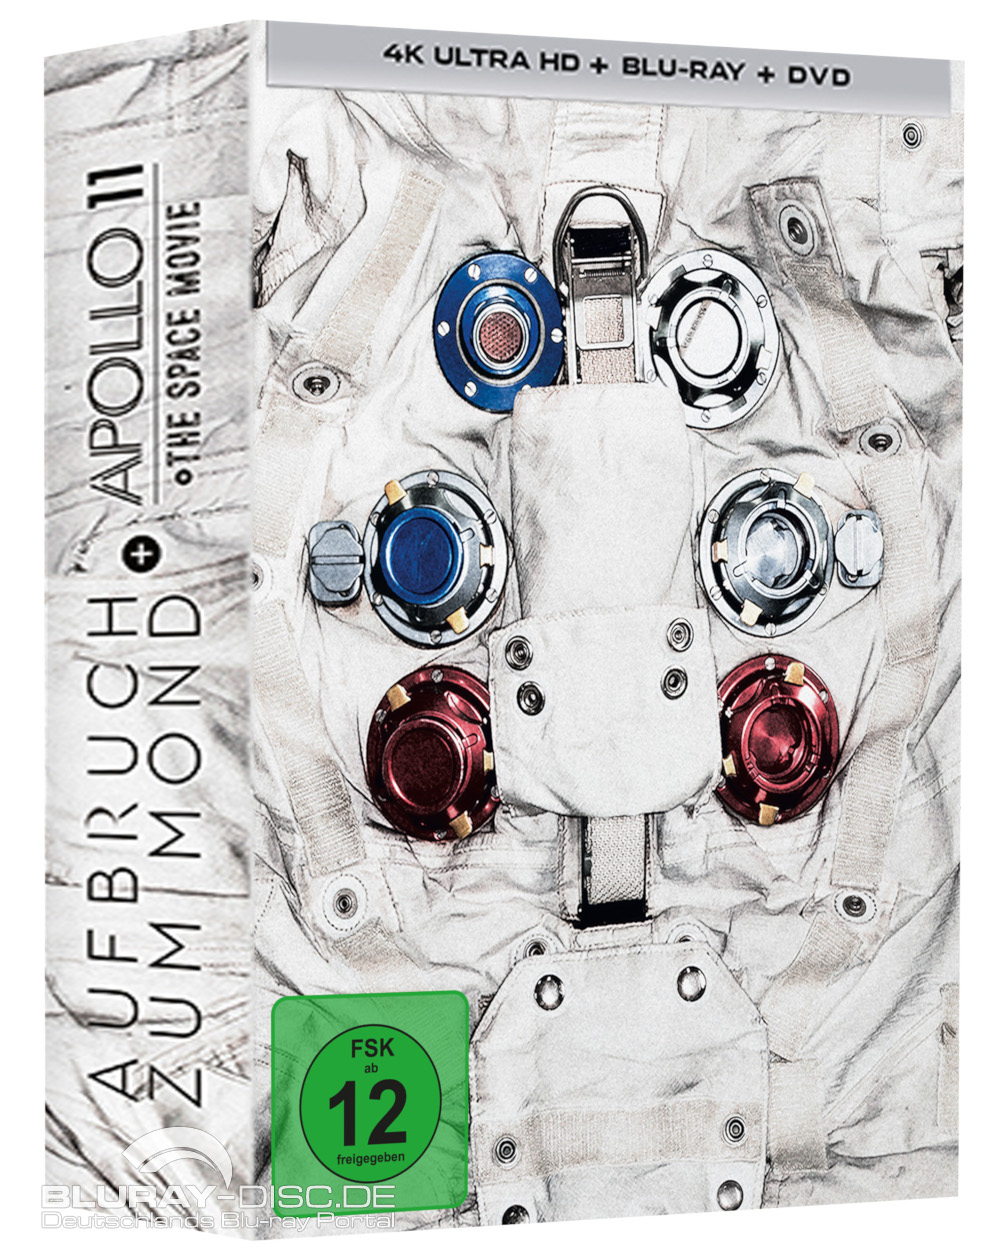 Aufbruch-zum-Mond-Apollo-11-Mediabook-Galerie.jpg